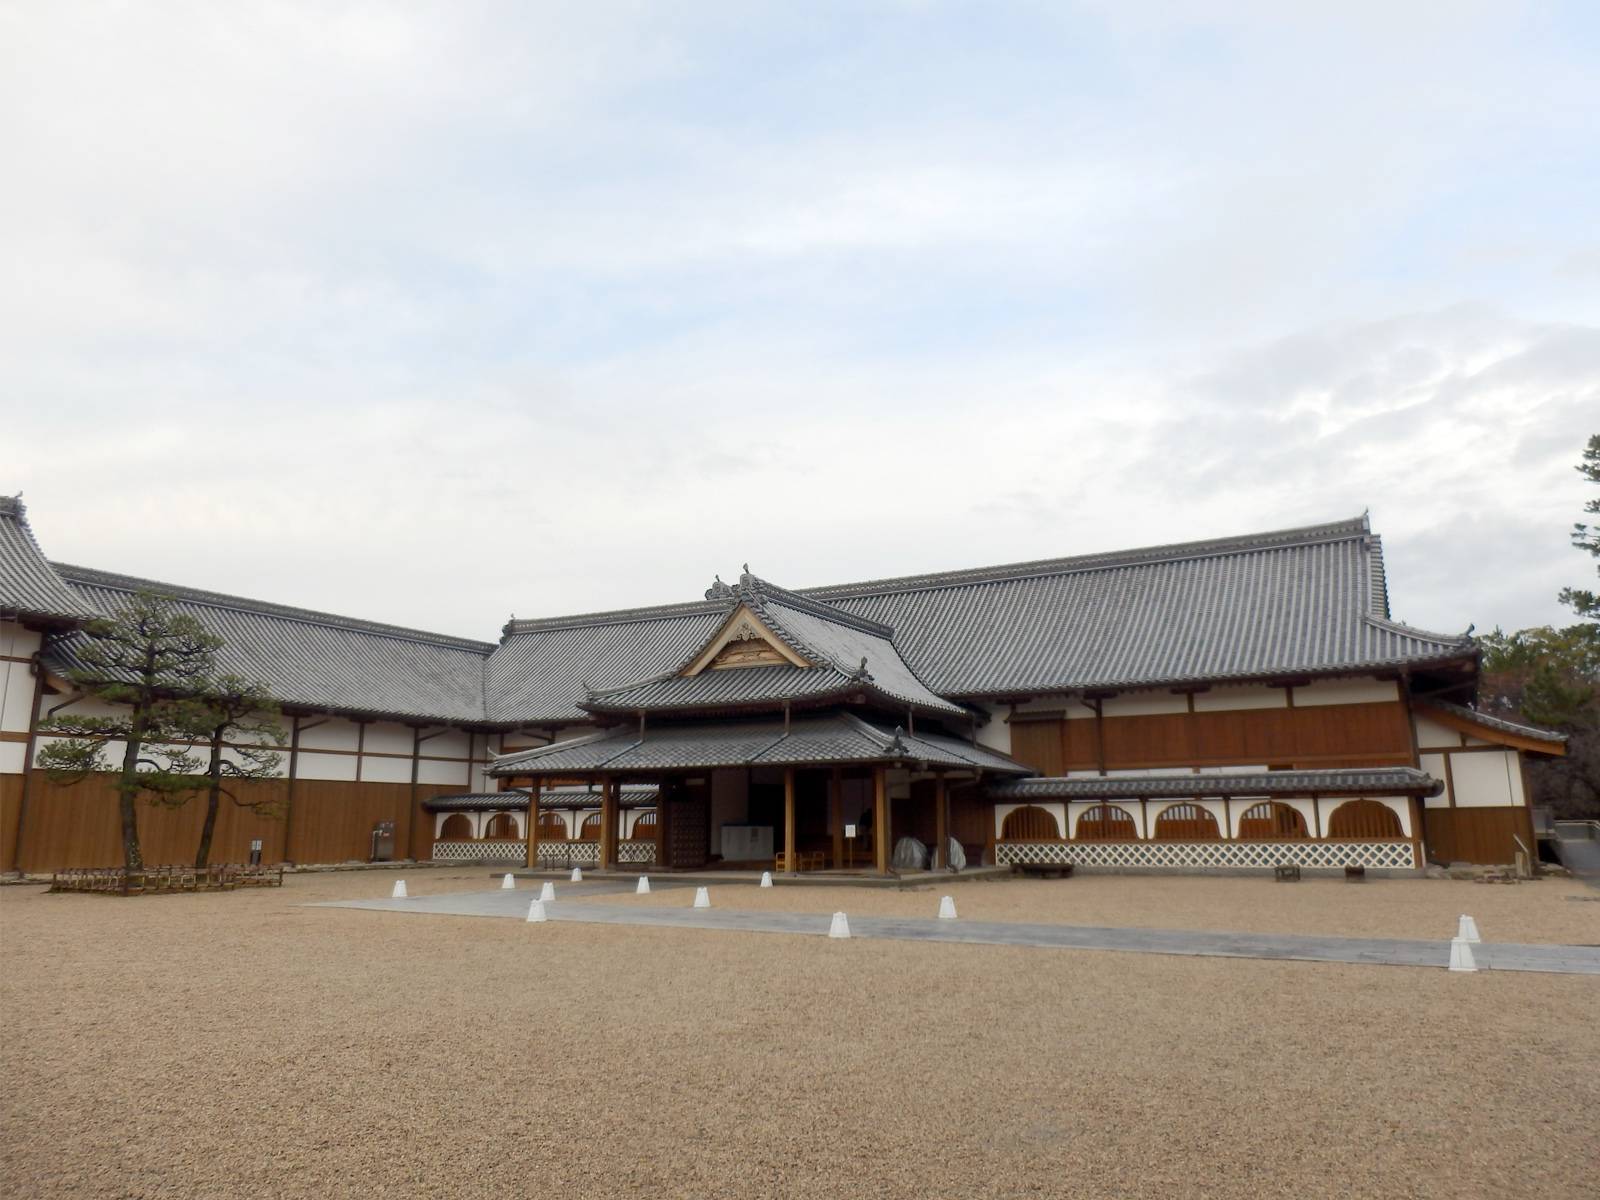 復元された佐賀城の本丸御殿